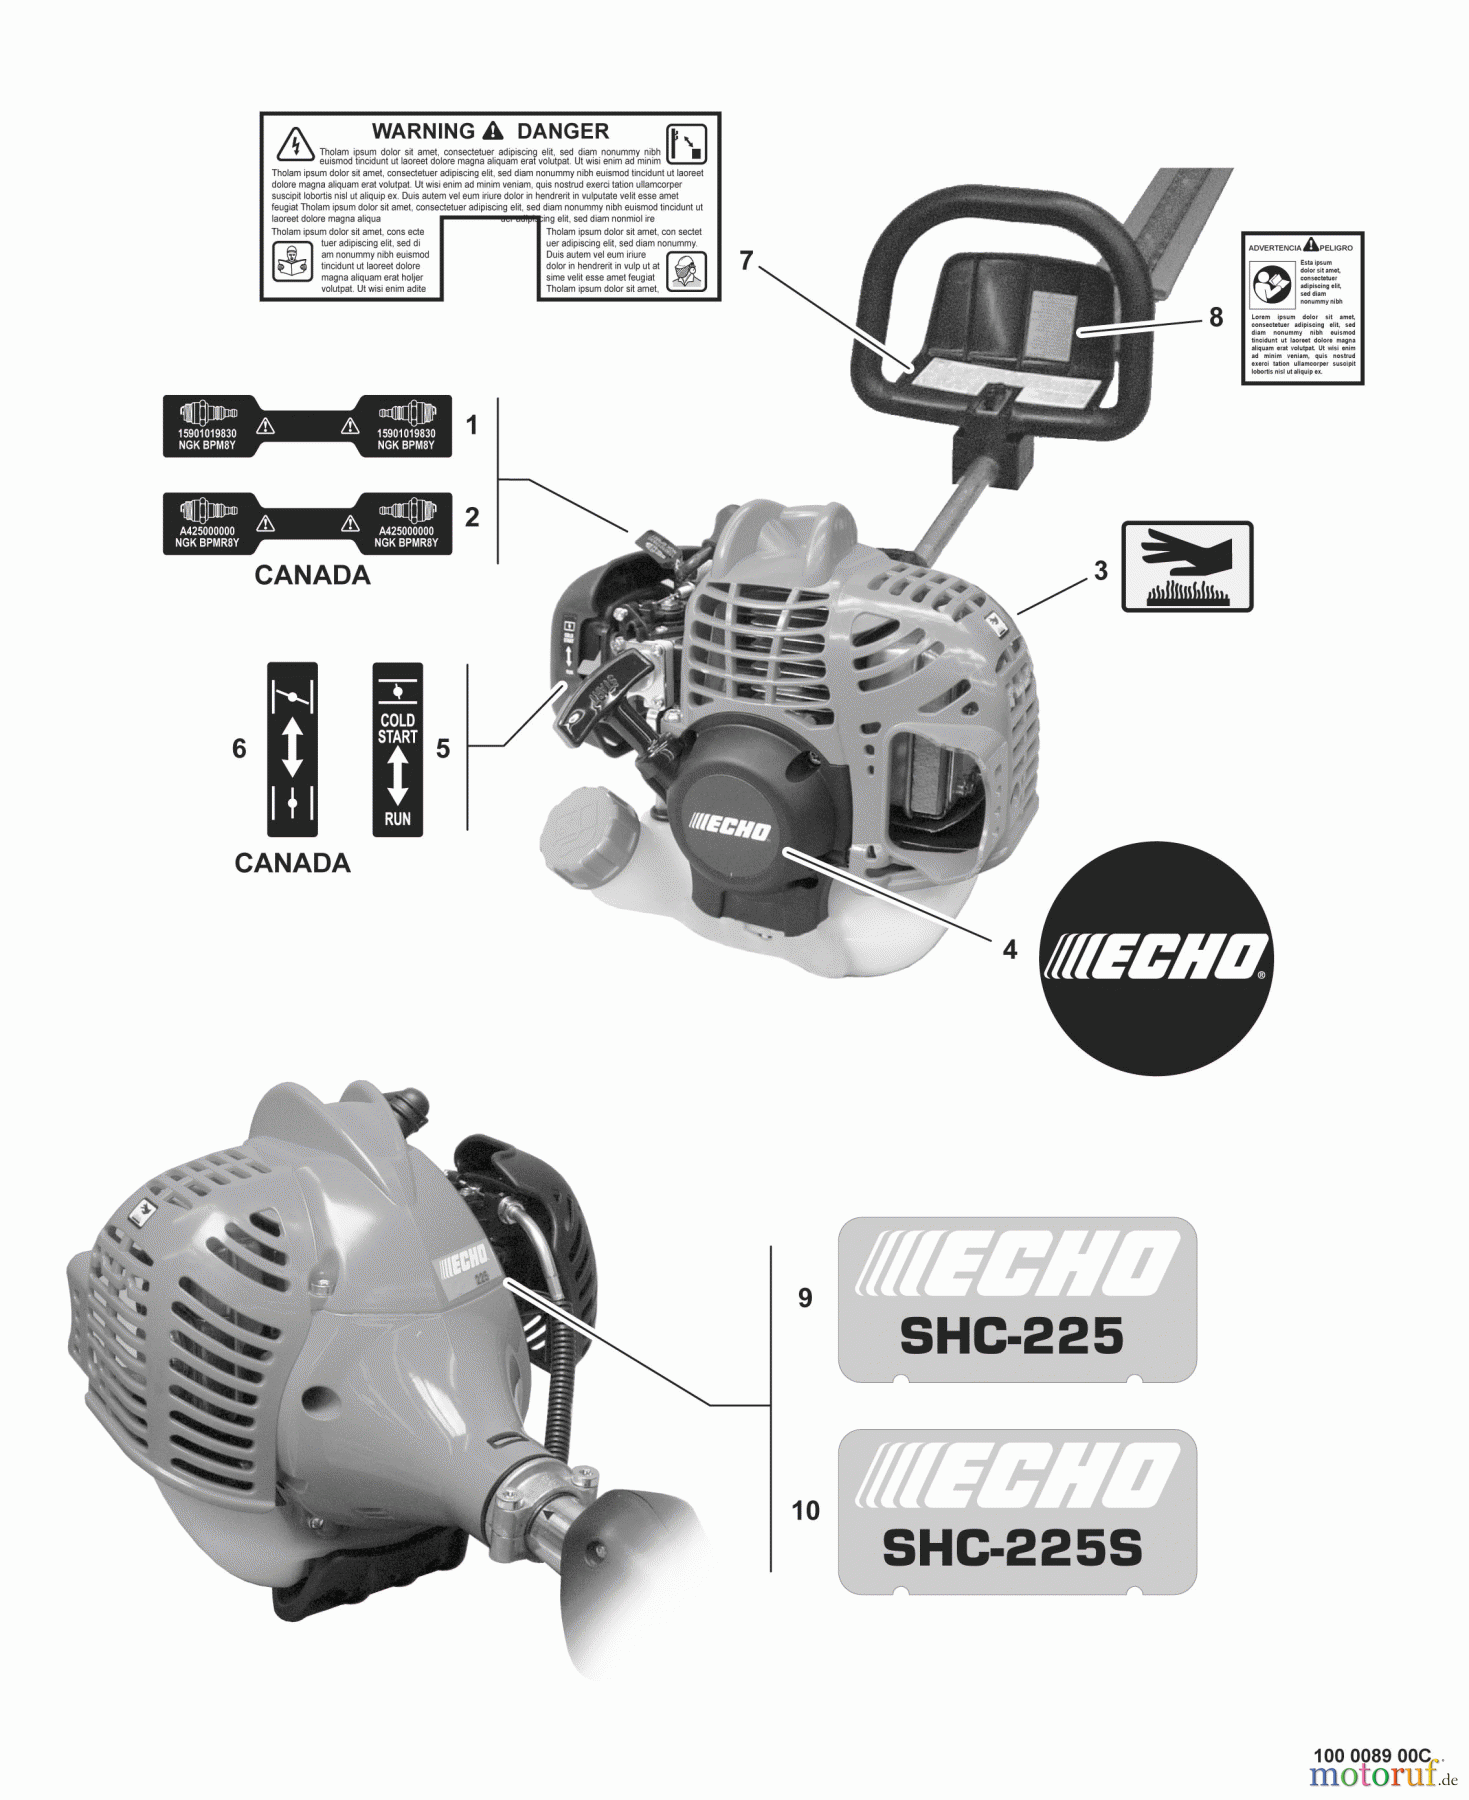  Echo Heckenscheren SHC-225 - Echo Shaft Hedge Trimmer, S/N: S85513001001 - S85513999999 Labels